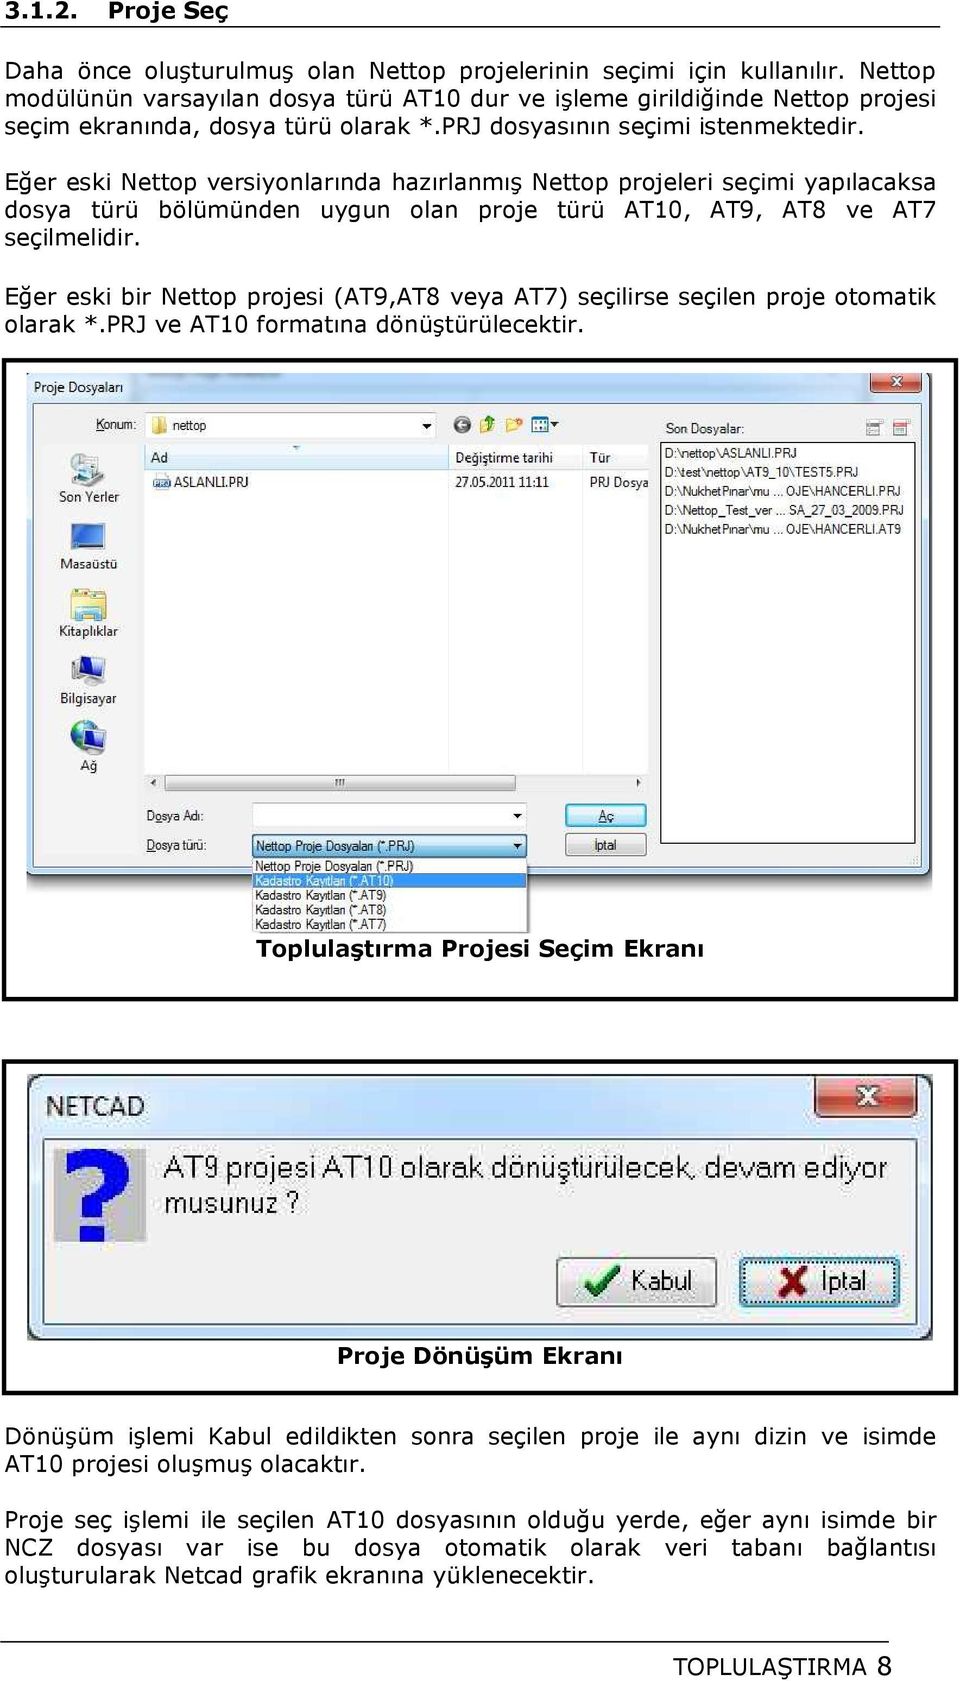 Eğer eski Nettop versiyonlarında hazırlanmış Nettop projeleri seçimi yapılacaksa dosya türü bölümünden uygun olan proje türü AT10, AT9, AT8 ve AT7 seçilmelidir.